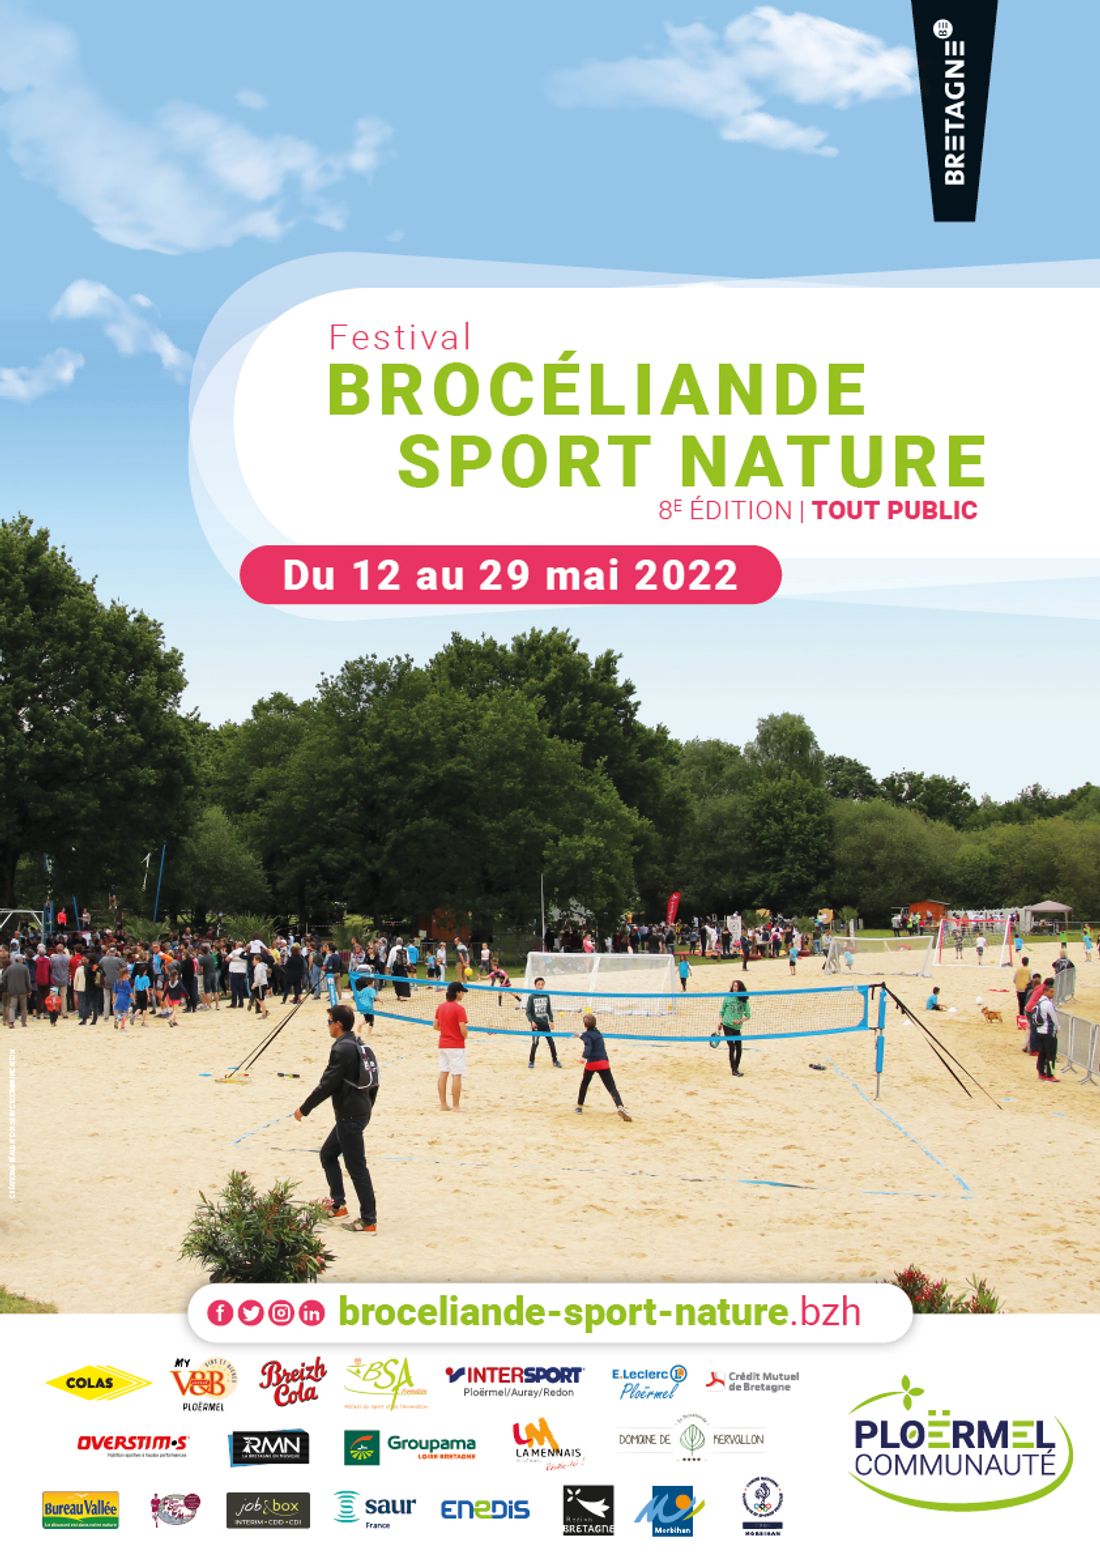 Brocéliande Sport Nature organisé par Ploërmel Communauté, en lien avec les associations locales. 